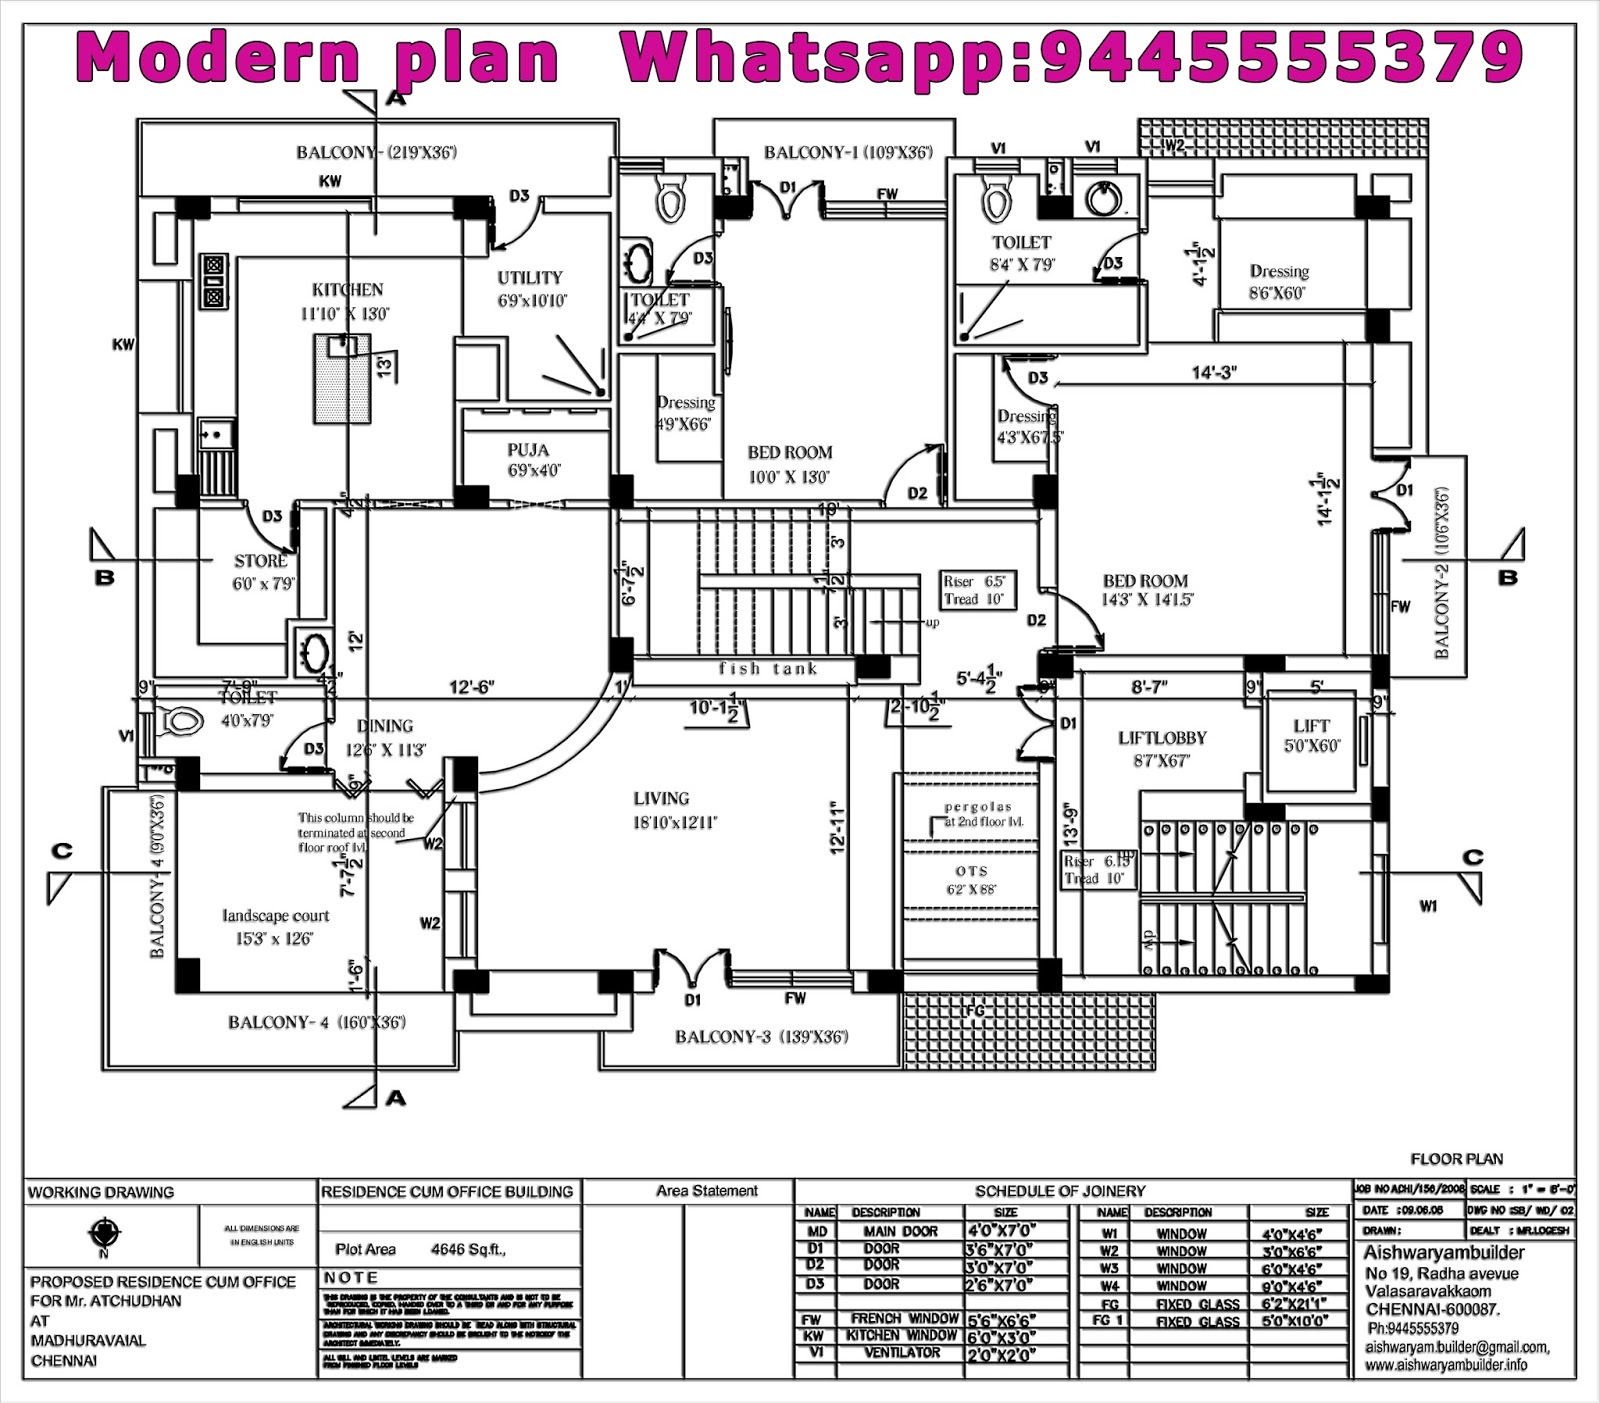 Contractors in Chennai: Modern plan House Chennai,Modern plans